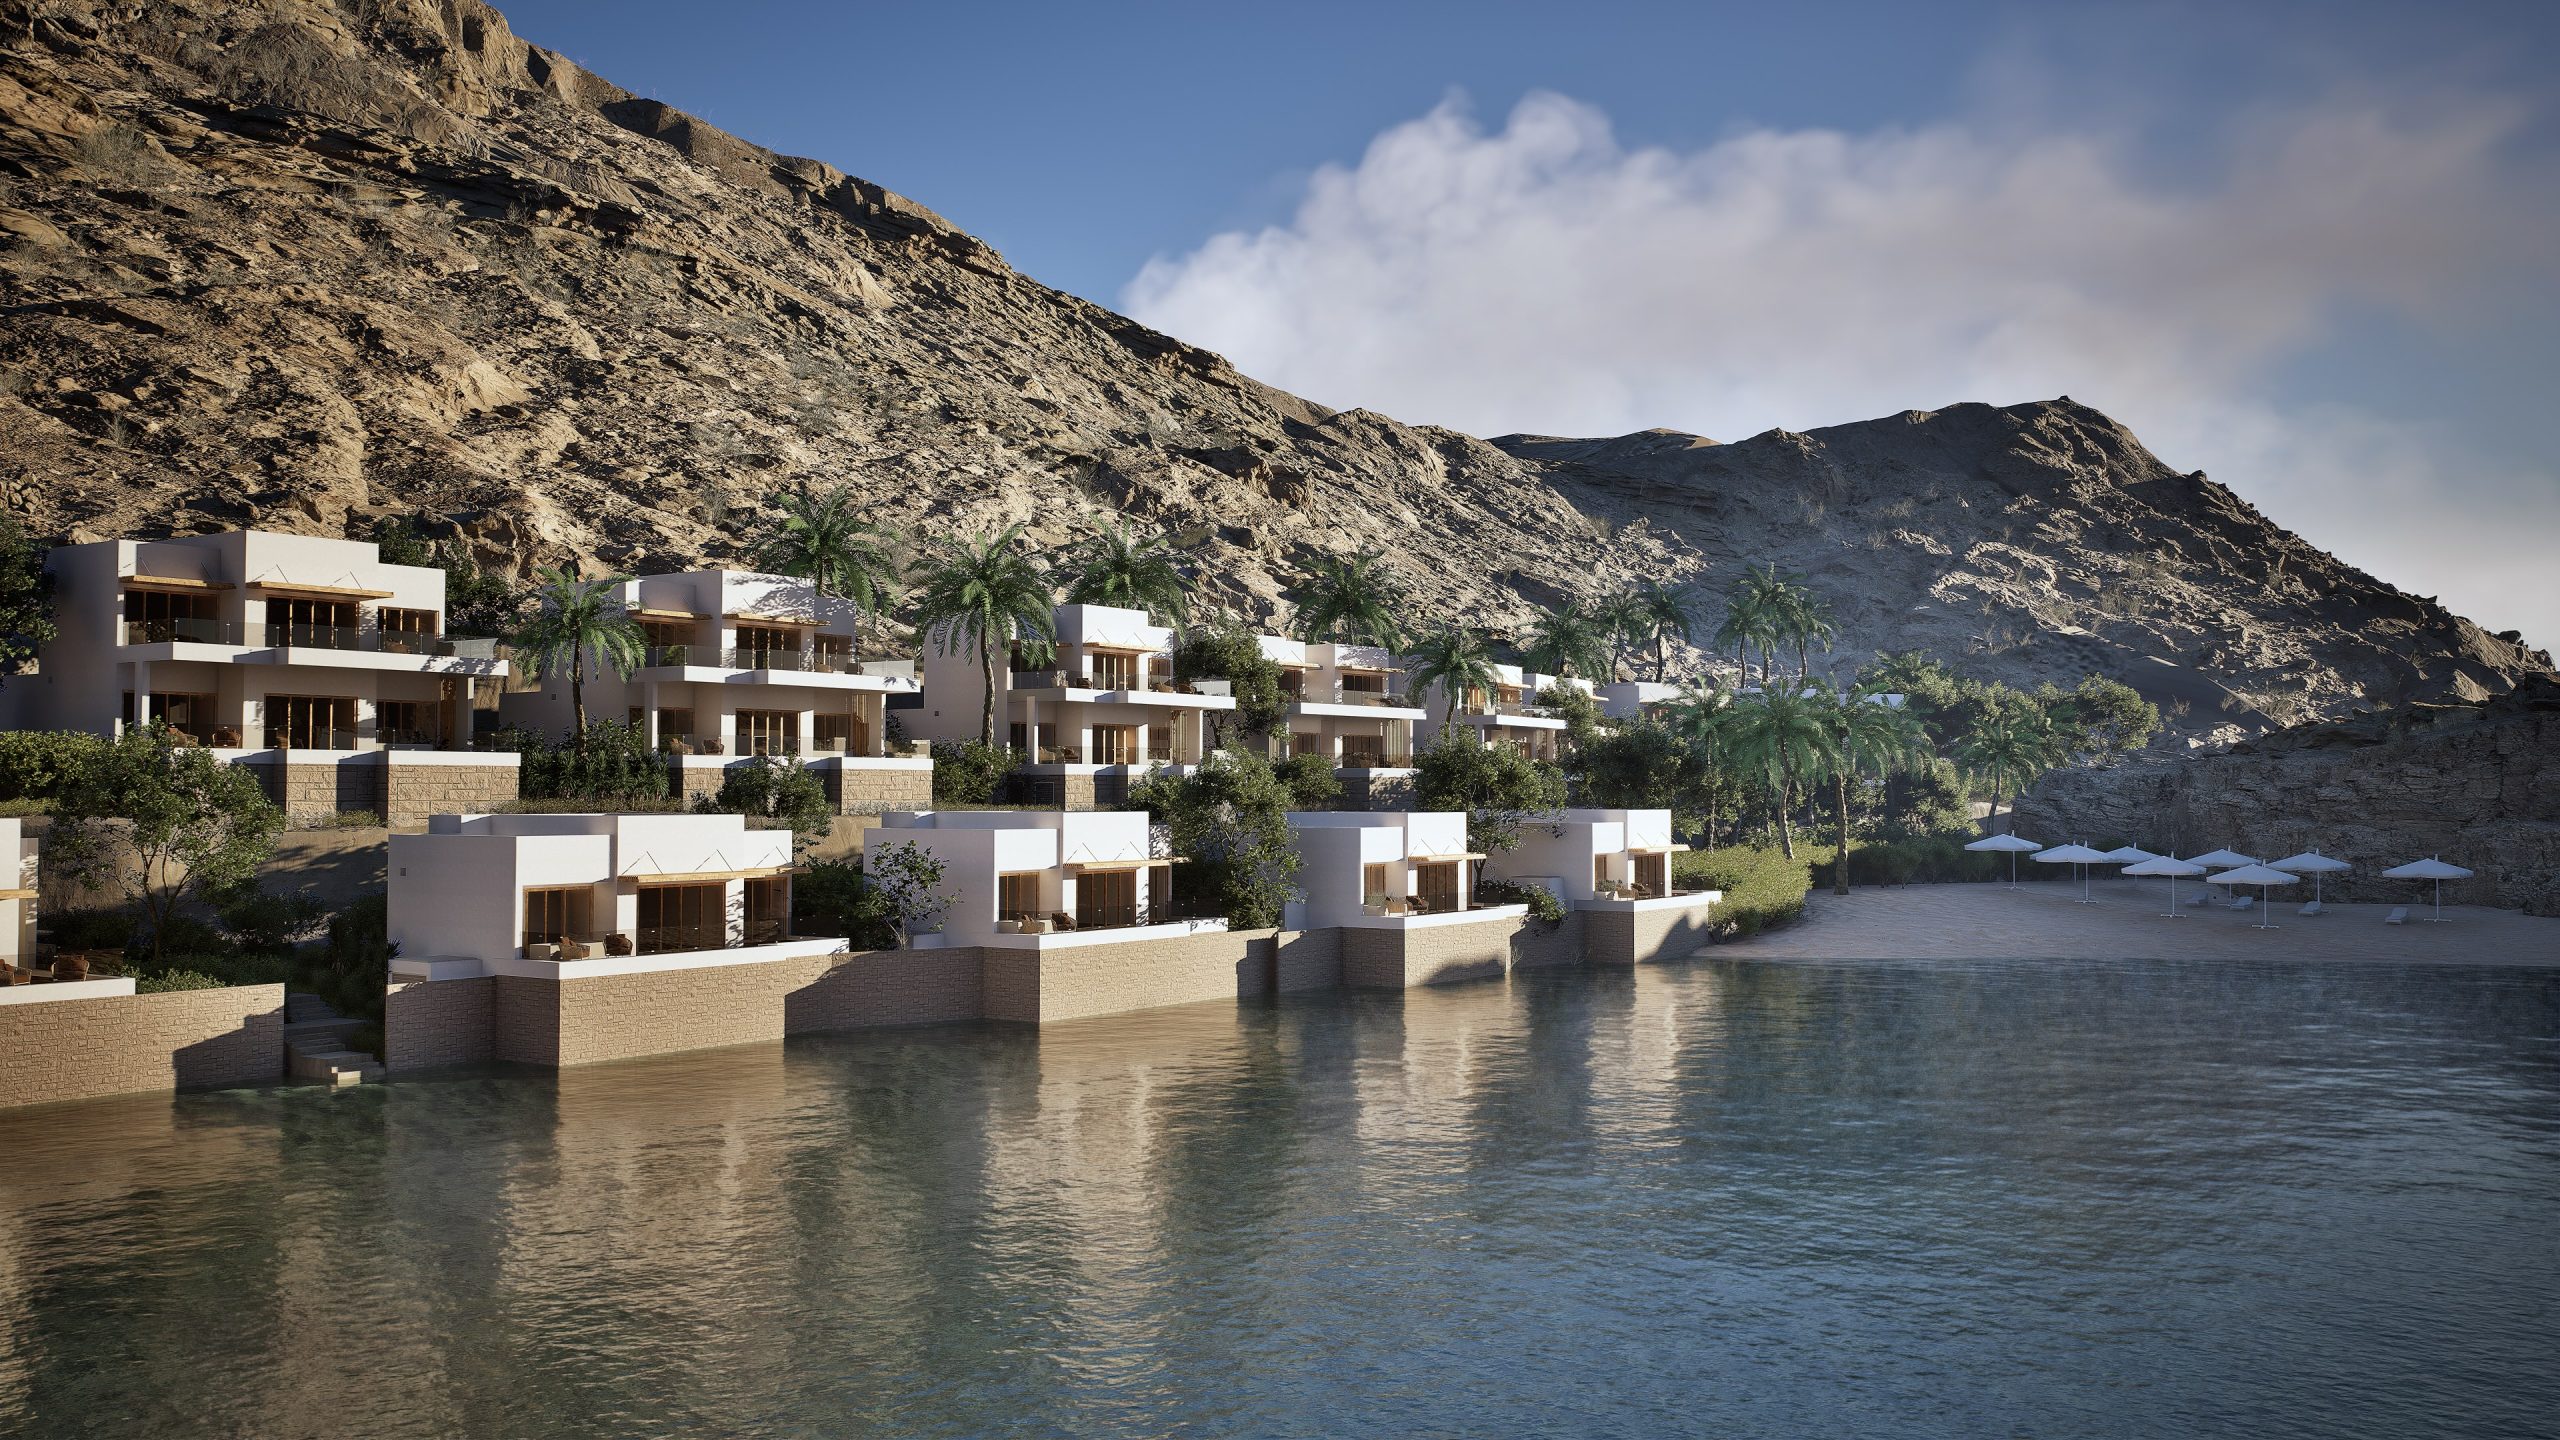 Anantara Resort - Bandar Al Khairan - Muscat Oman - Villas rendering